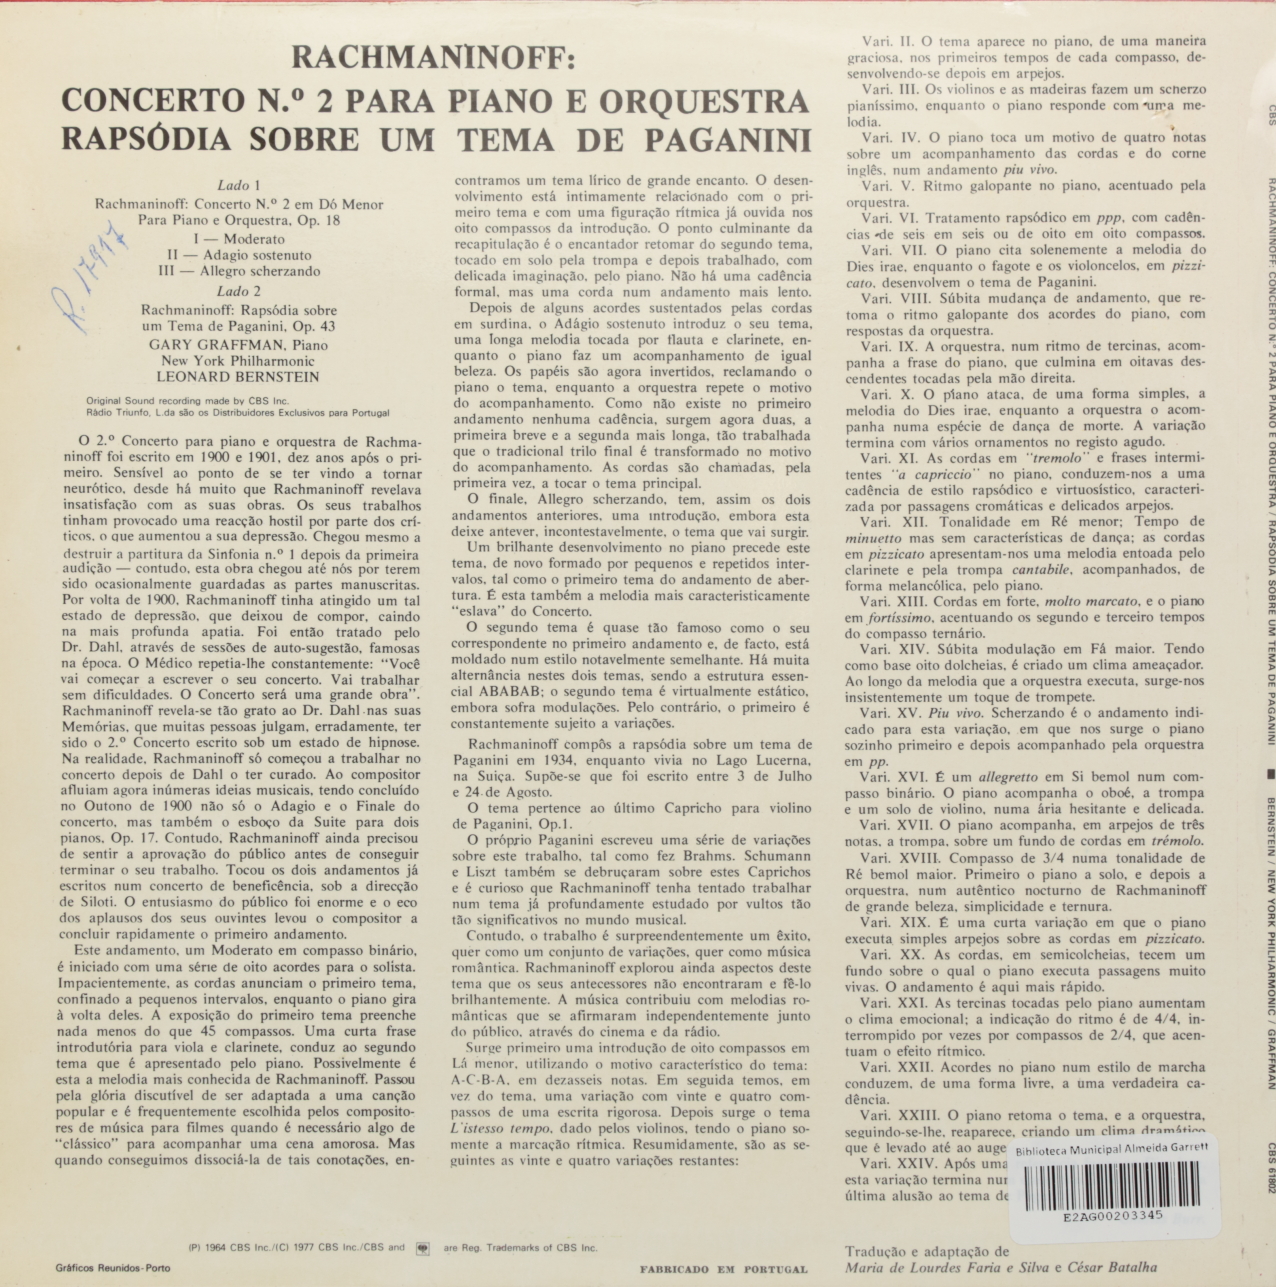 Rachmaninoff: Concerto Nº 2 para Piano e Orquestra; Rapsódia sobre um tema de Paganini